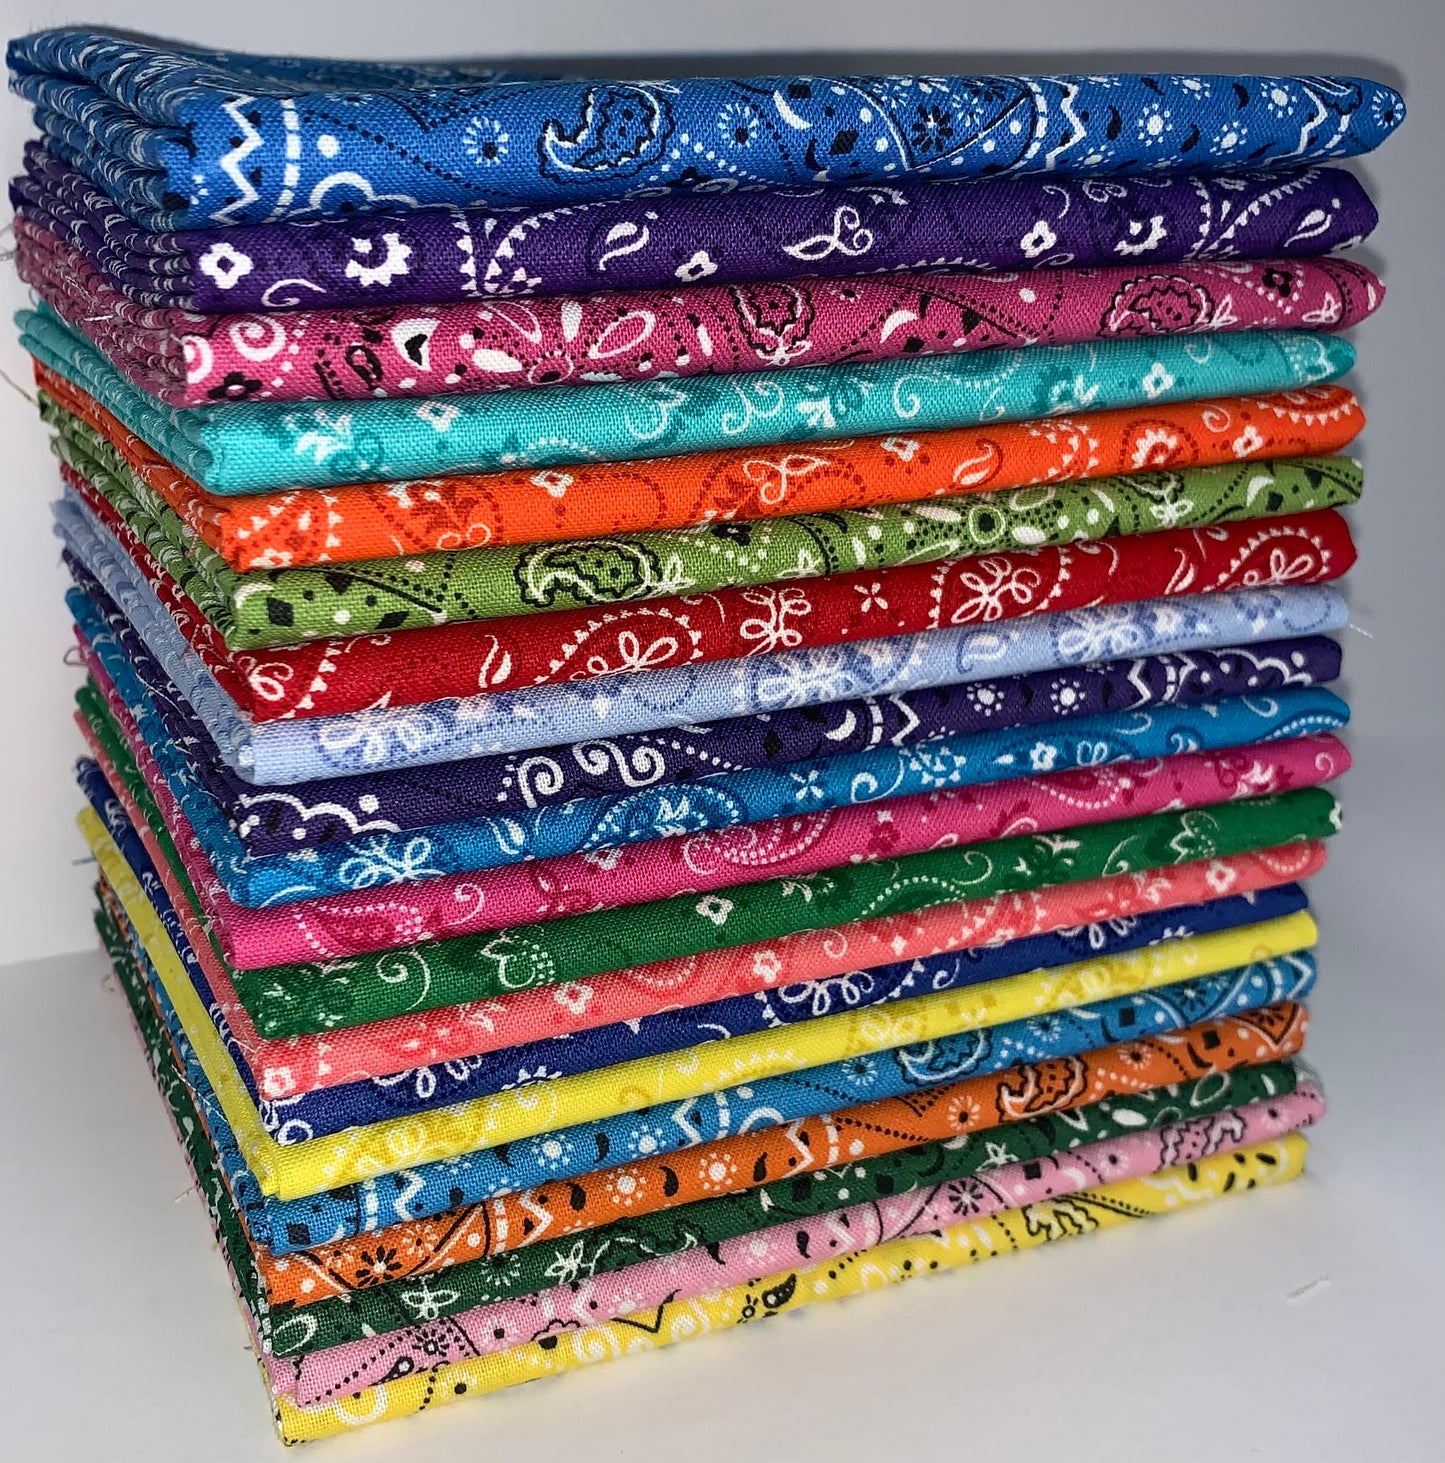 Bandana Paisley Fat Quarter Bundle - 20 Fabrics, 20 Total Fat Quarters